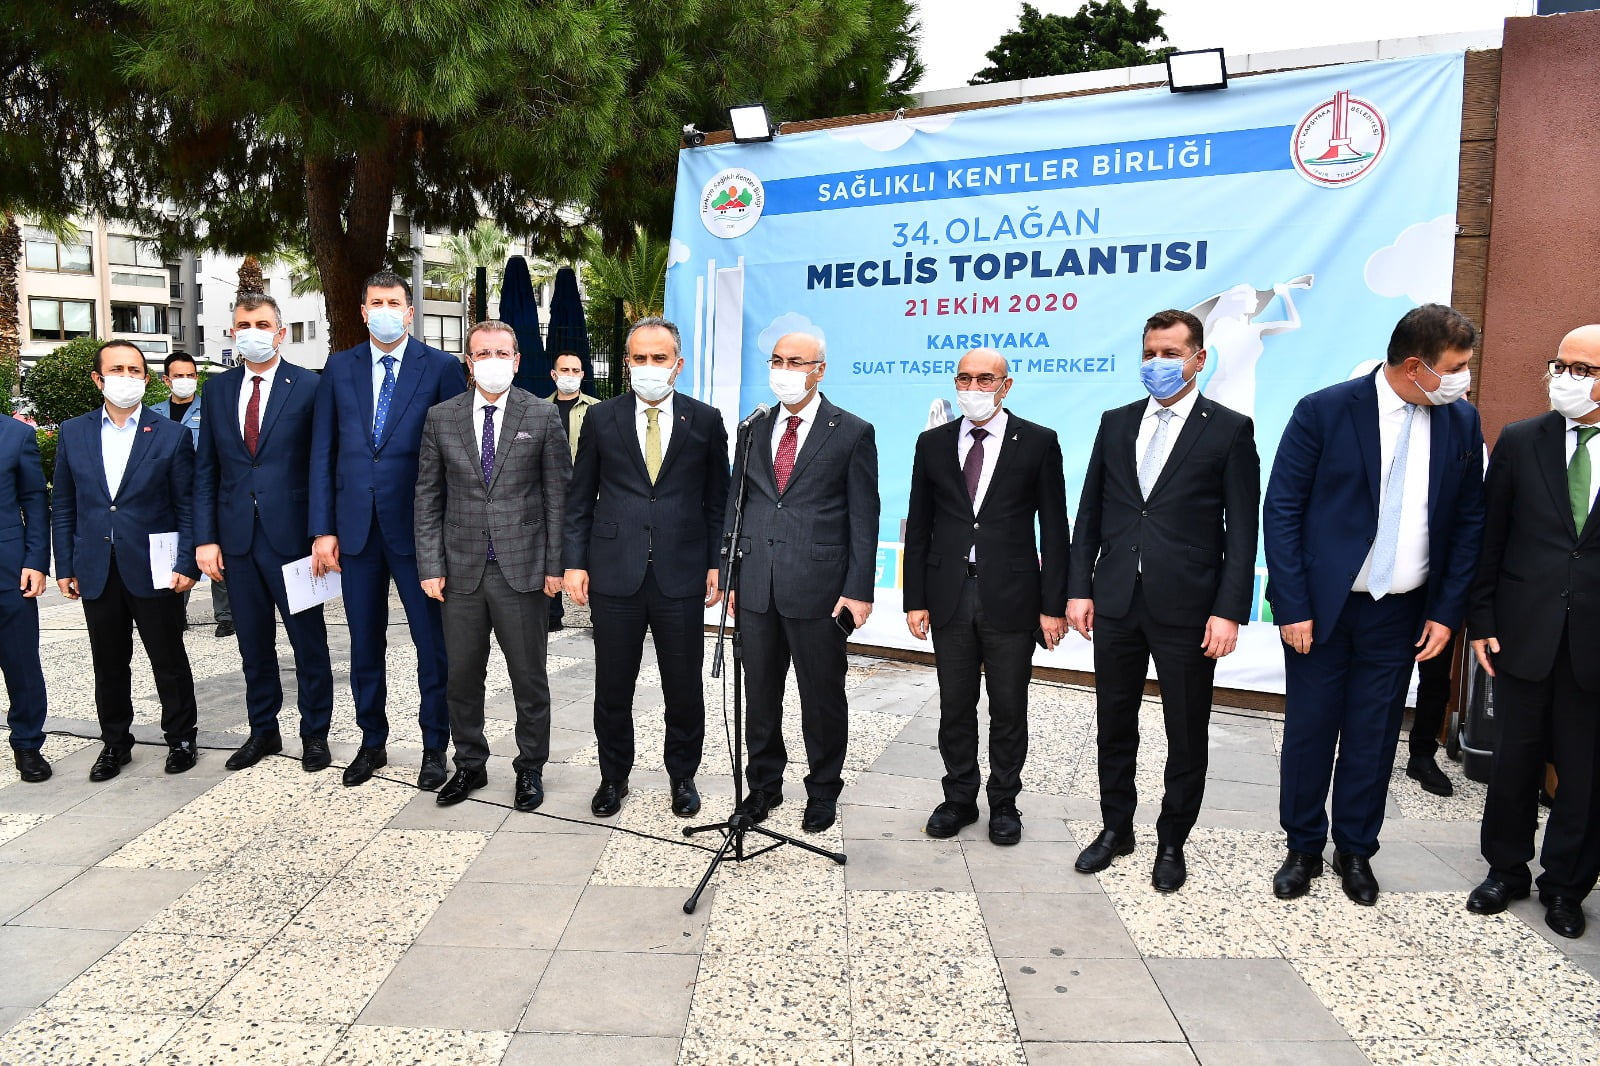 Sağlıklı Kentler Birliği İzmir’de toplandı